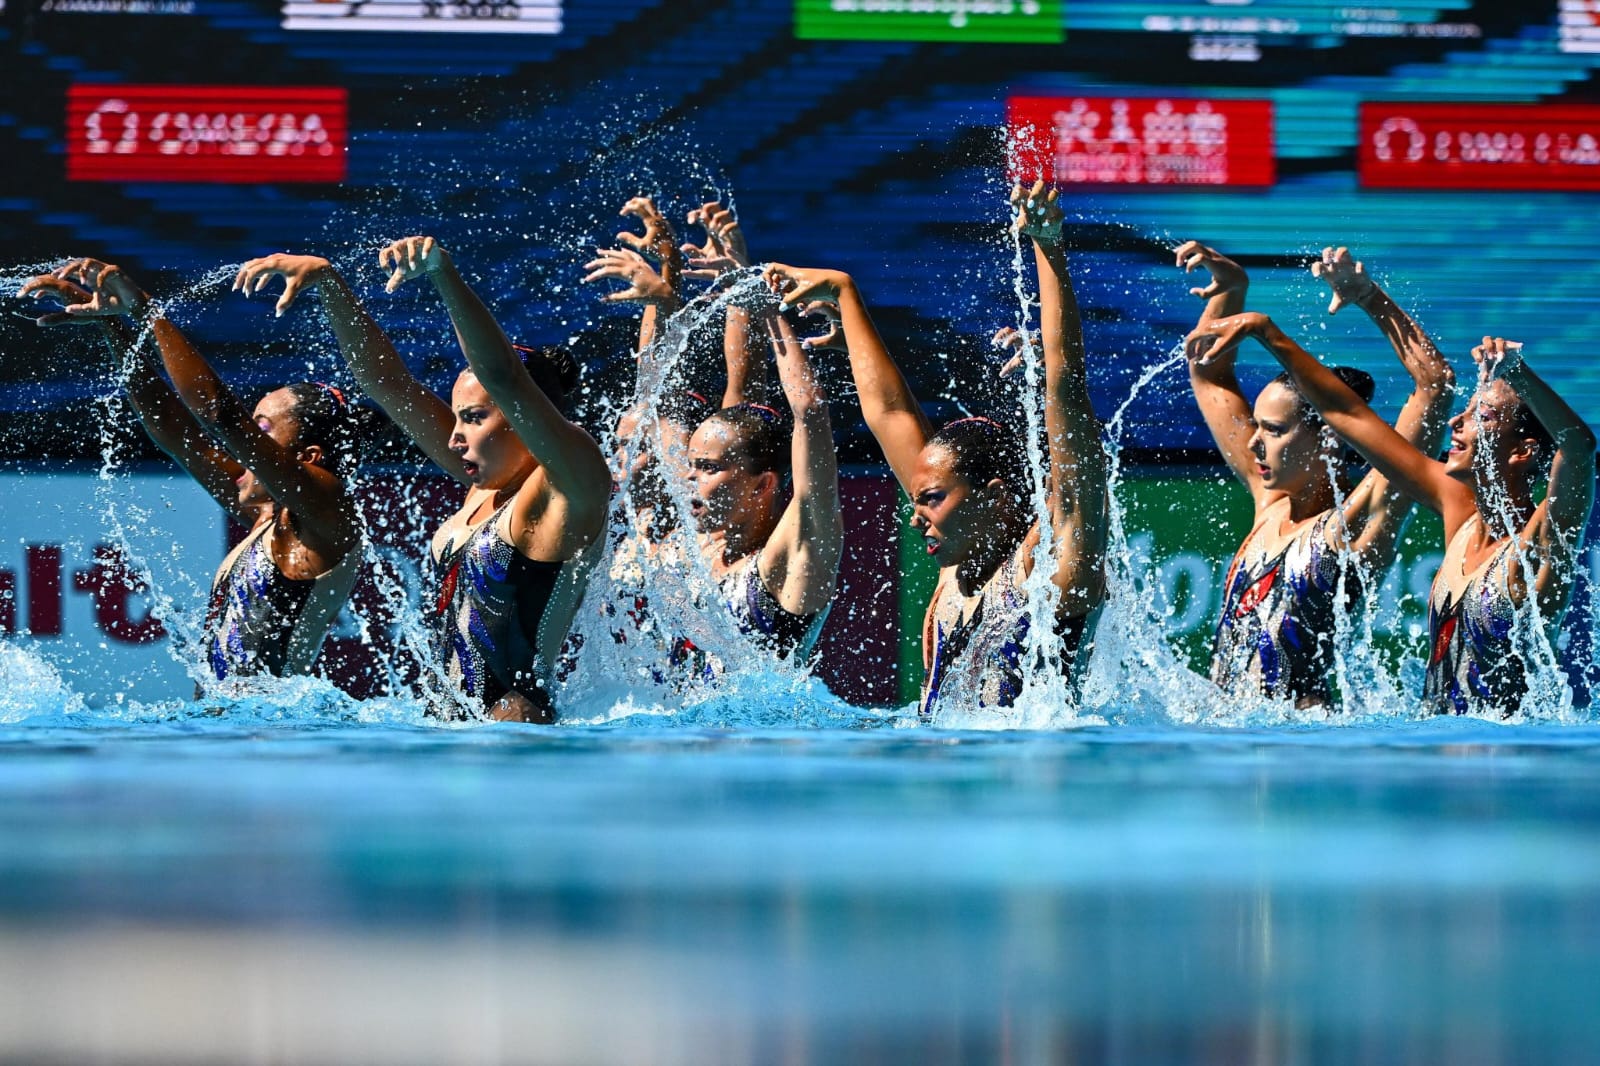 Seleção feminina sub-20 disputa Campeonato Mundial de Polo Aquático, em  Portugal - Notícia :: CBDA